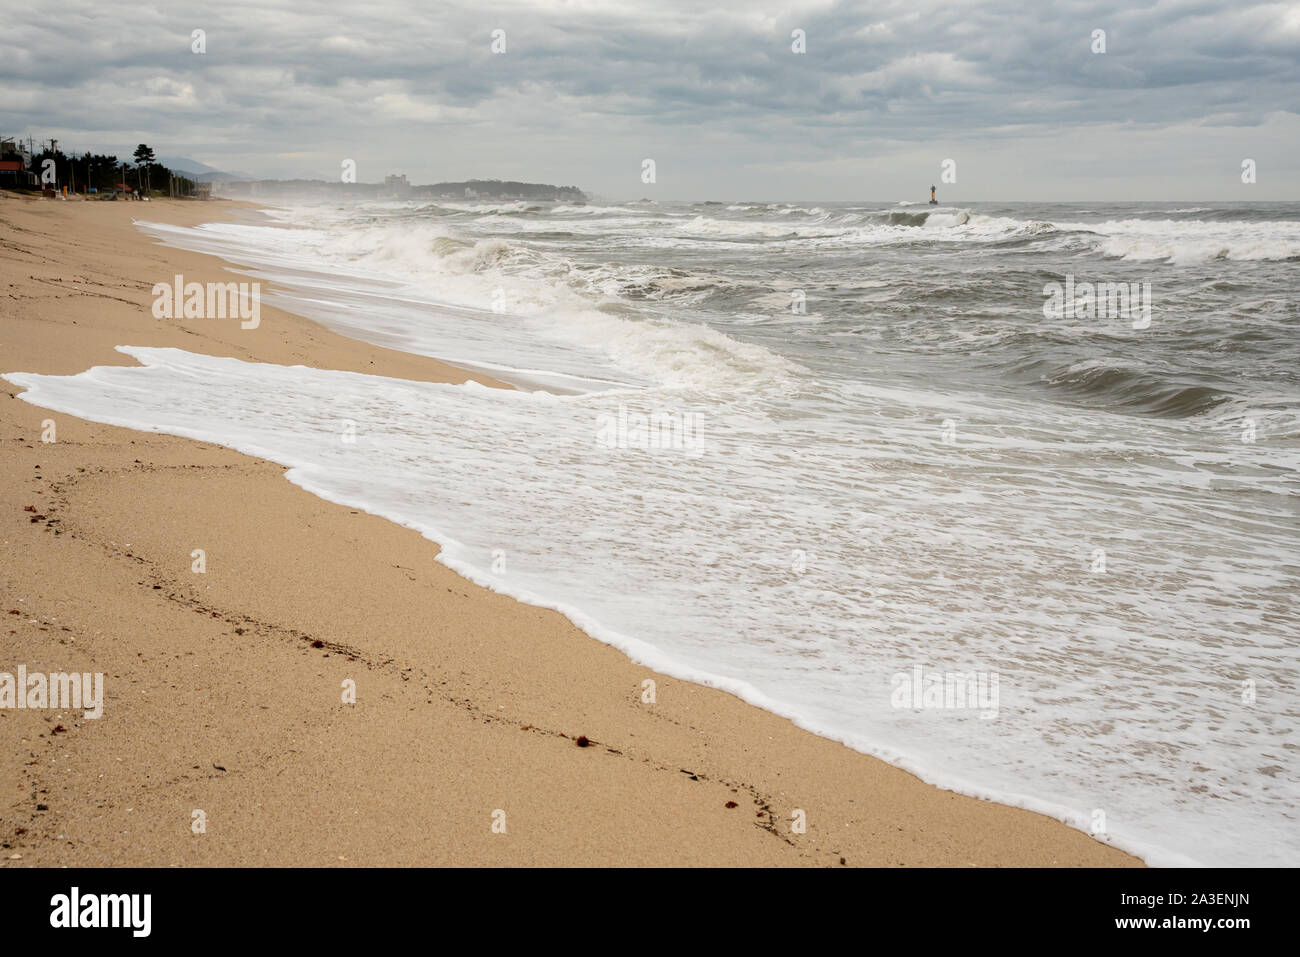 Ein seashore Szene, in der die hohen Wellen mit Wetter und starke Winde kommen. Südkorea Donghae das Meer. Stockfoto